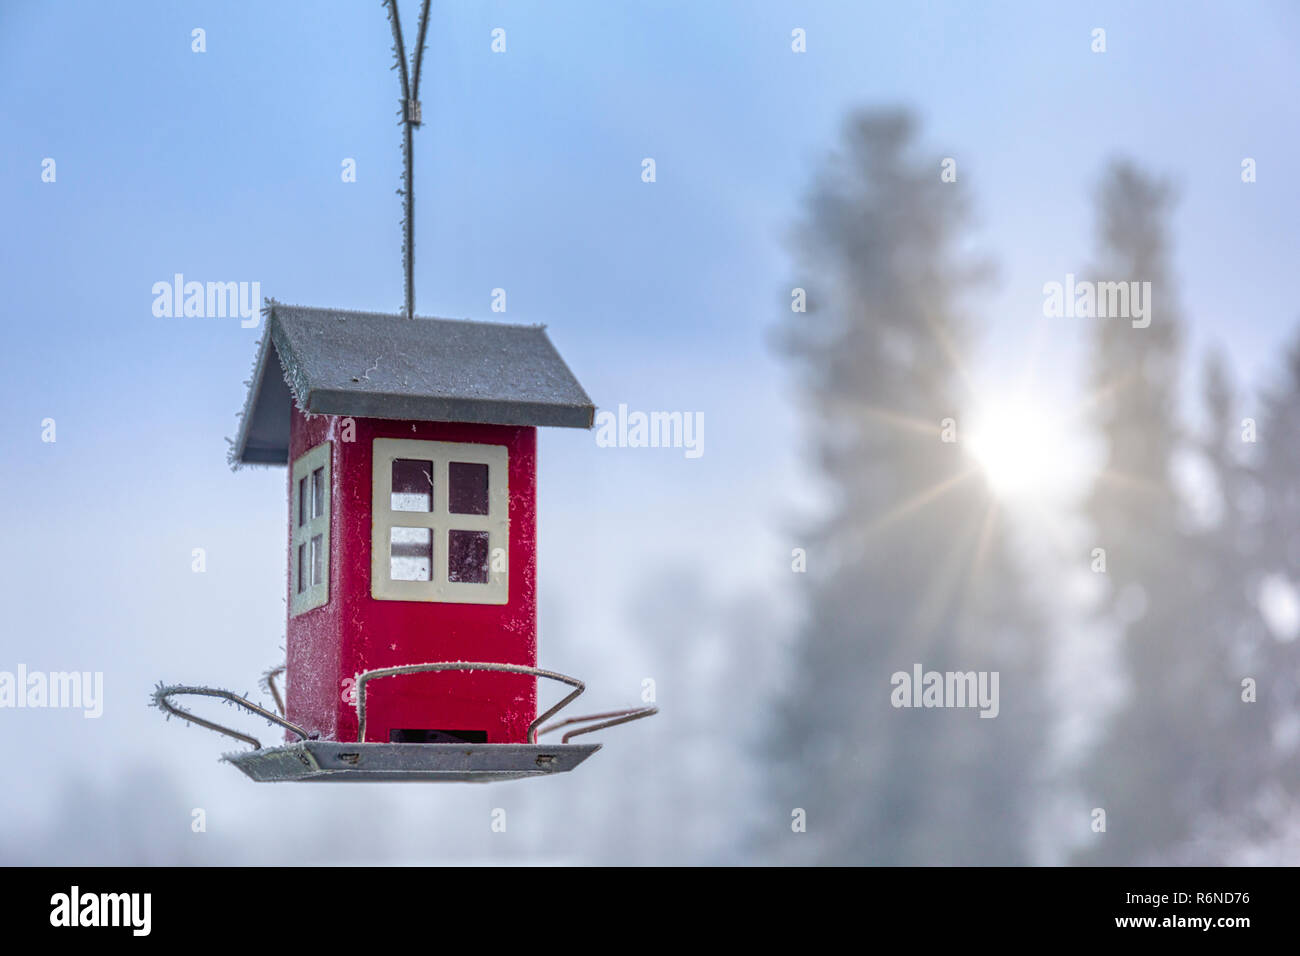 FLODA, Svezia - 27 novembre 2018: Piccolo rosso tipica casa svedese stile casa bird feeder contro bella fuori fuoco sfondo inverno Foto Stock